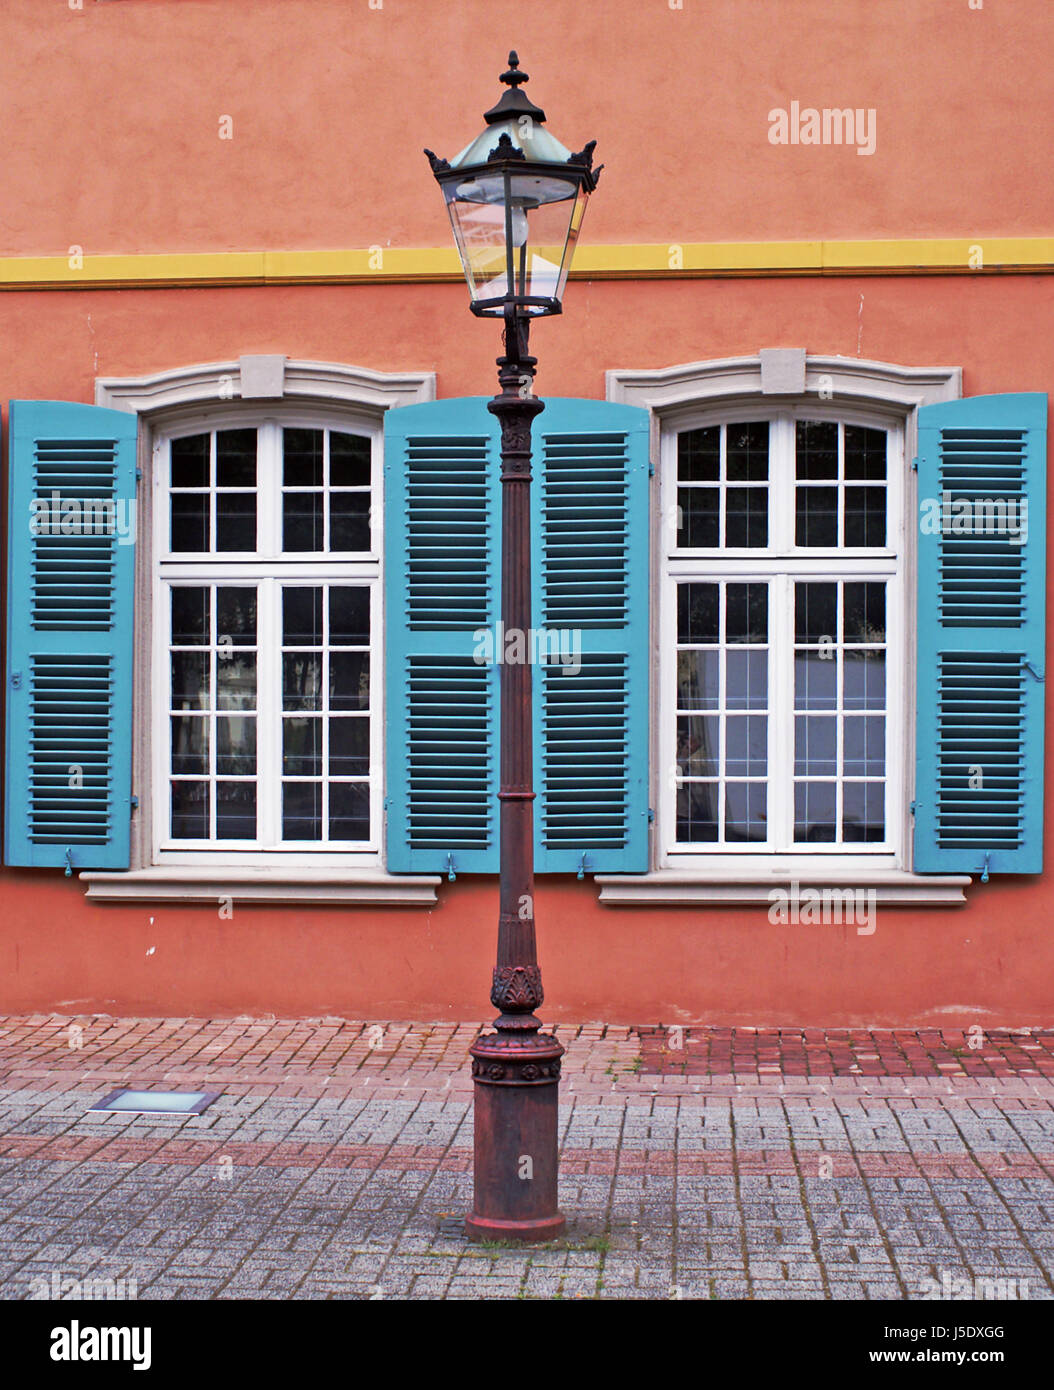 La fenêtre d'ingénierie sous-fenêtre lucarne hublot contraste antique lanterne façade Banque D'Images